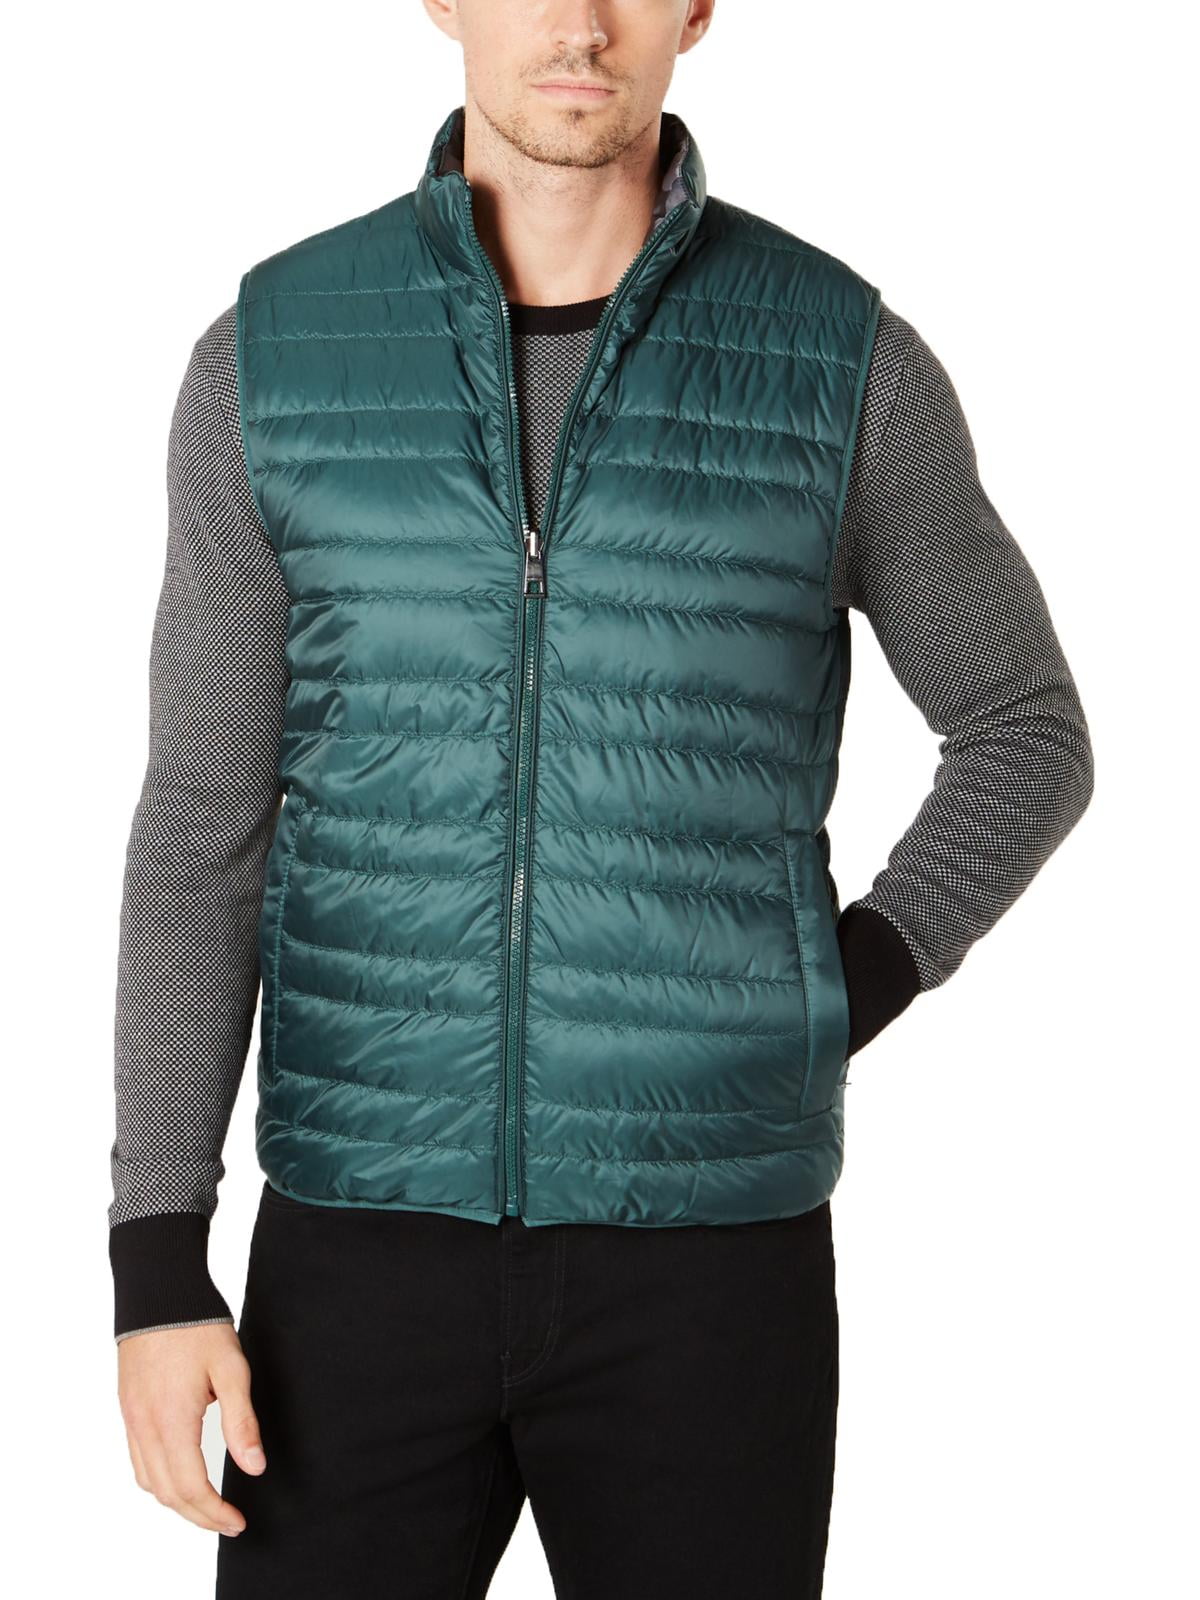 Michael Kors - Michael Kors Mens Reversible Packable Outerwear Vest ...